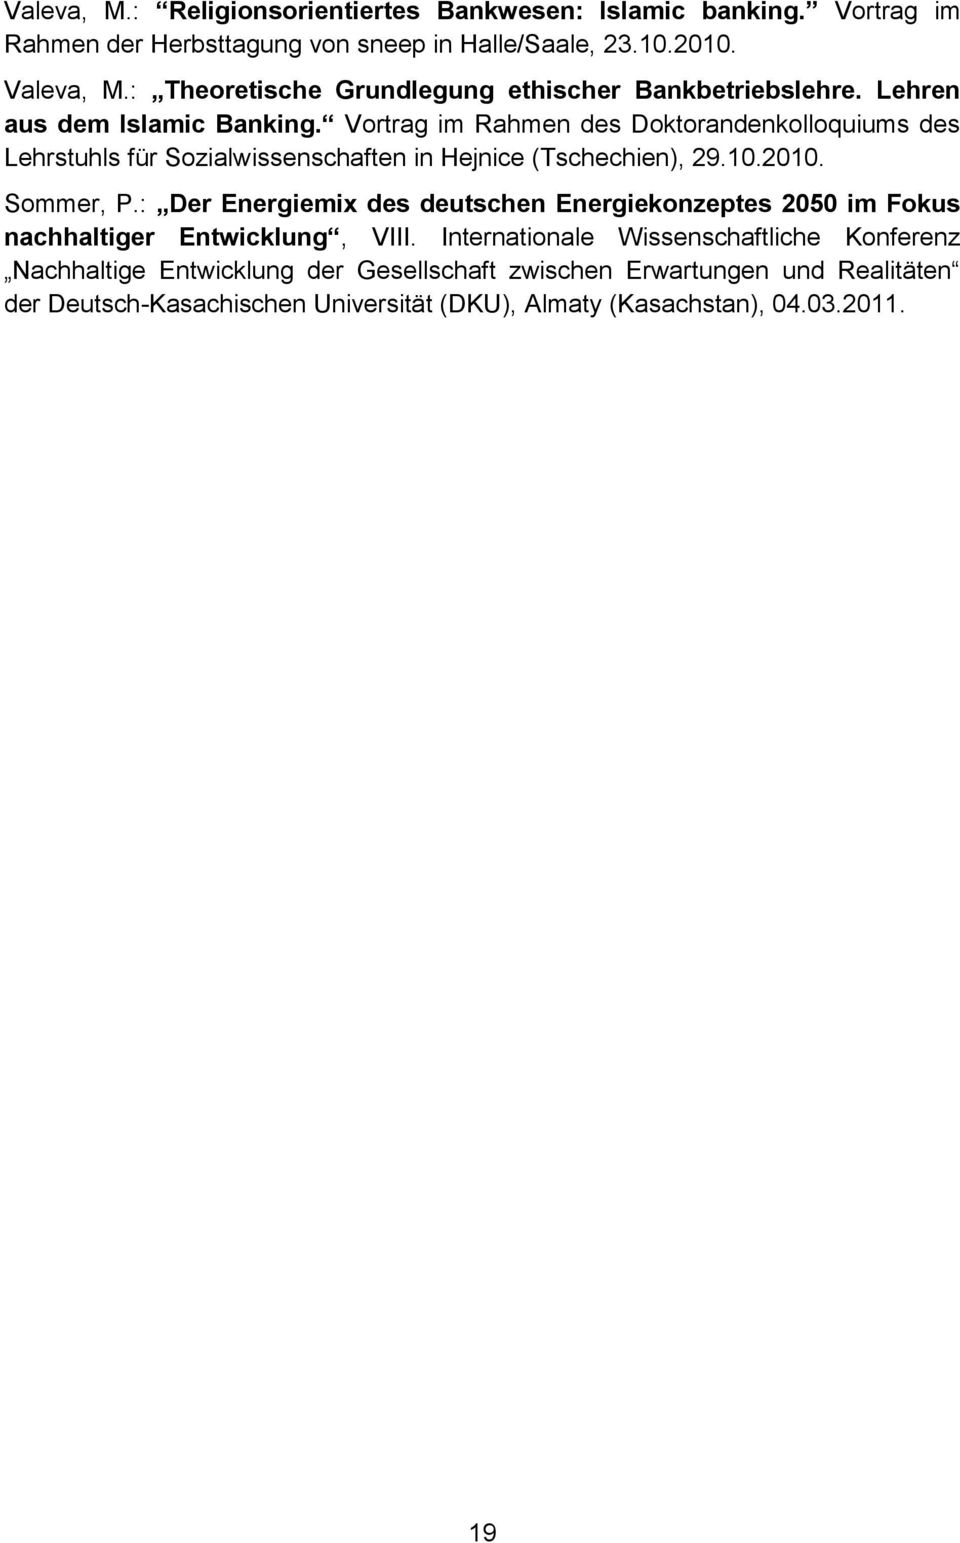 Vortrag im Rahmen des Doktorandenkolloquiums des Lehrstuhls für Sozialwissenschaften in Hejnice (Tschechien), 29.10.2010. Sommer, P.